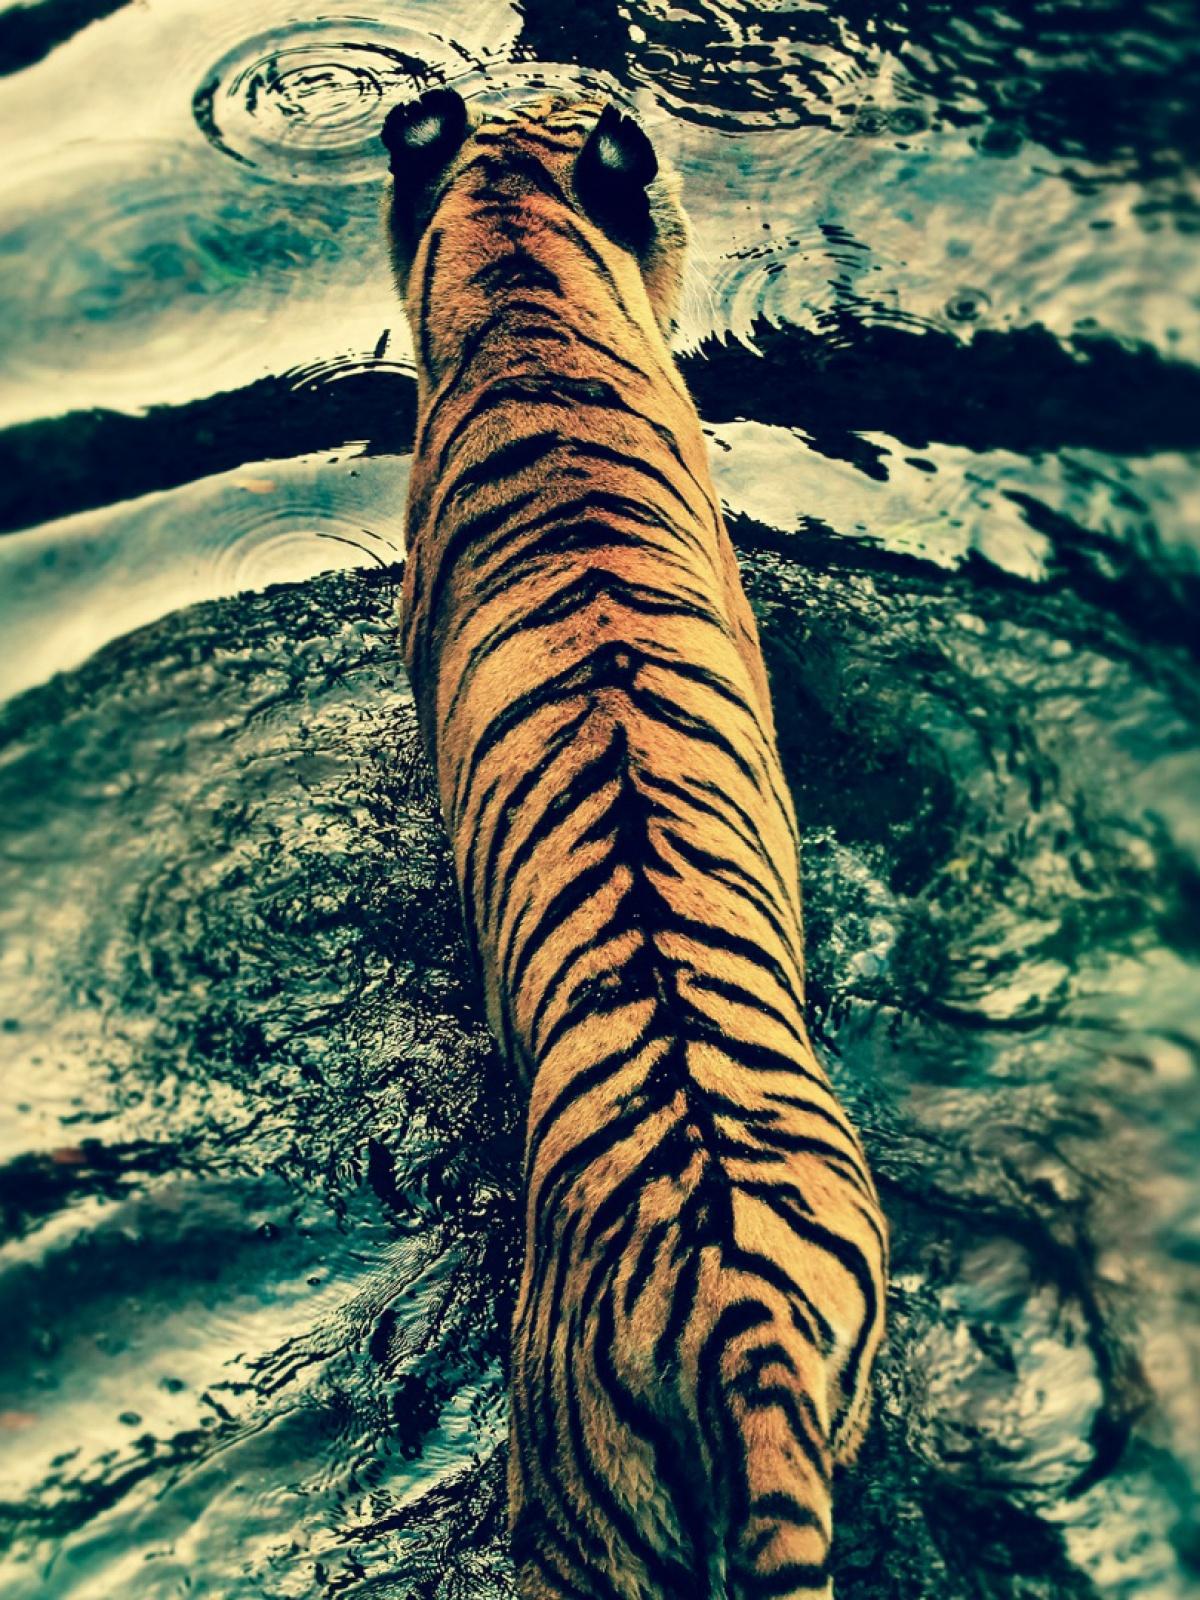 Tiger In Disneys Animal Kingdom Mobile Wallpaper